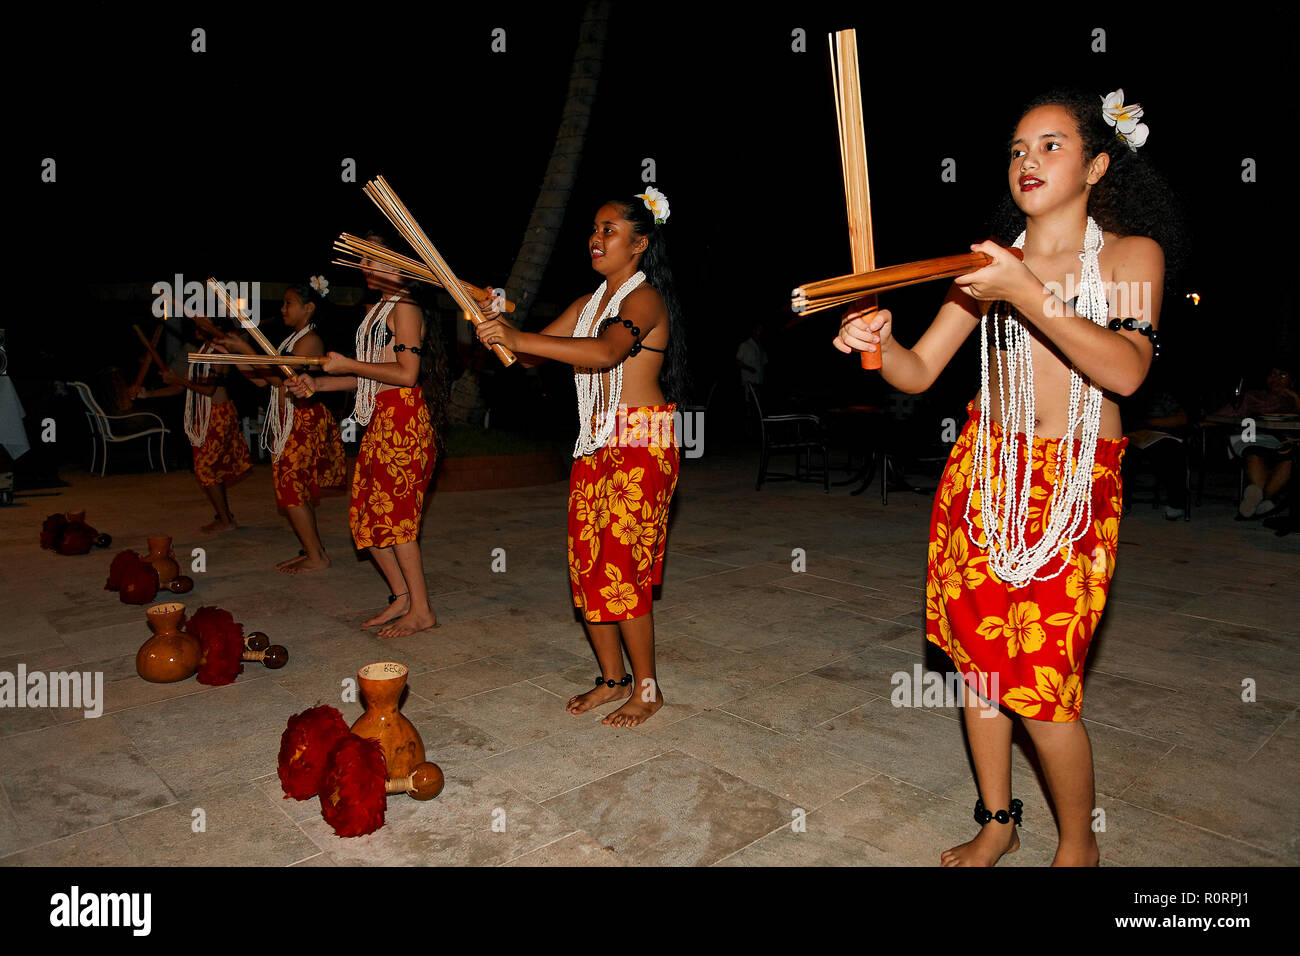 Einheimische Mädchen beim traditionellen Tanz, Palau, Mikronesien | Local dancing women, Palau, Micronesia Stock Photo